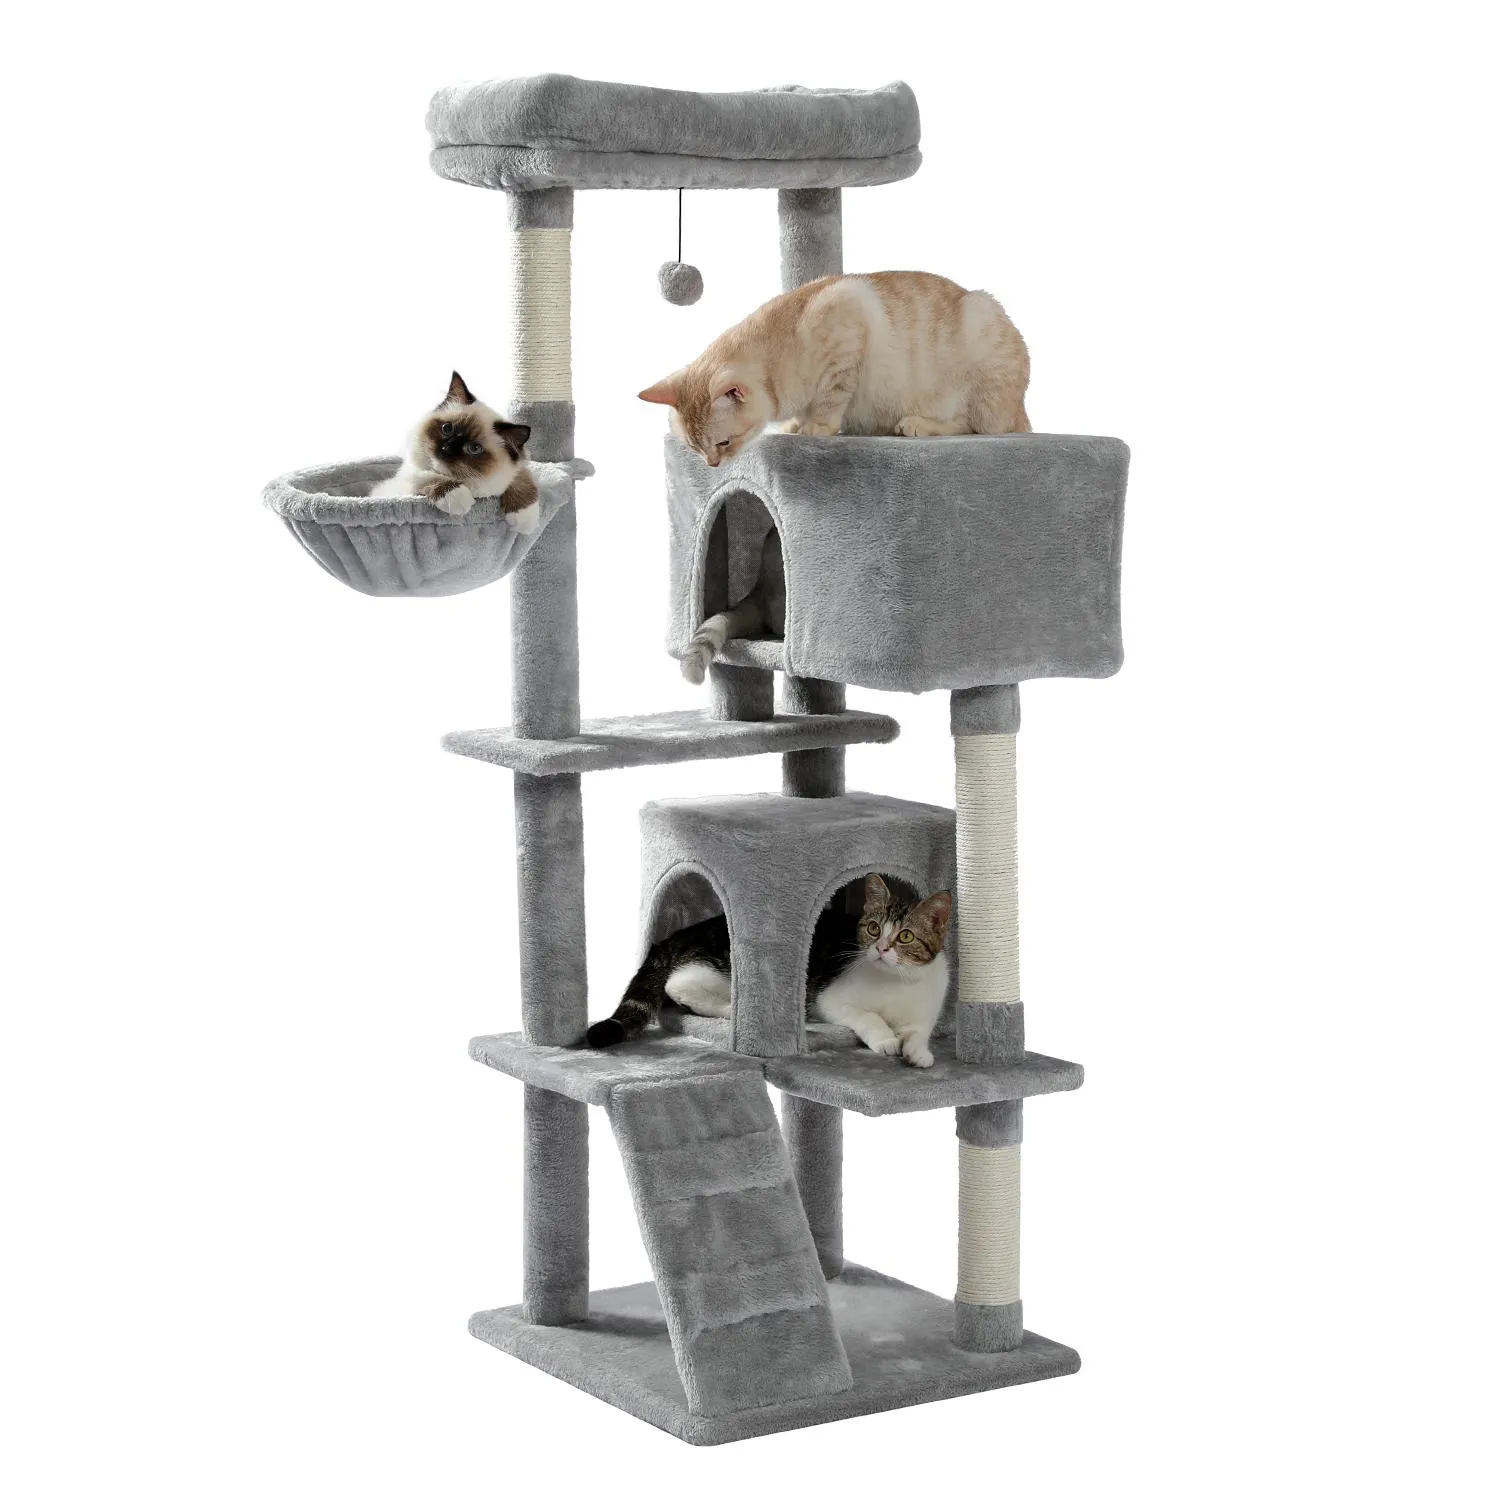 Arranhadores para gatos, escada de árvore natural, sisal, poste para arranhar, para gatos, gatinhos, móveis, torre de vários níveis, ilusório, aconchegante, hummock